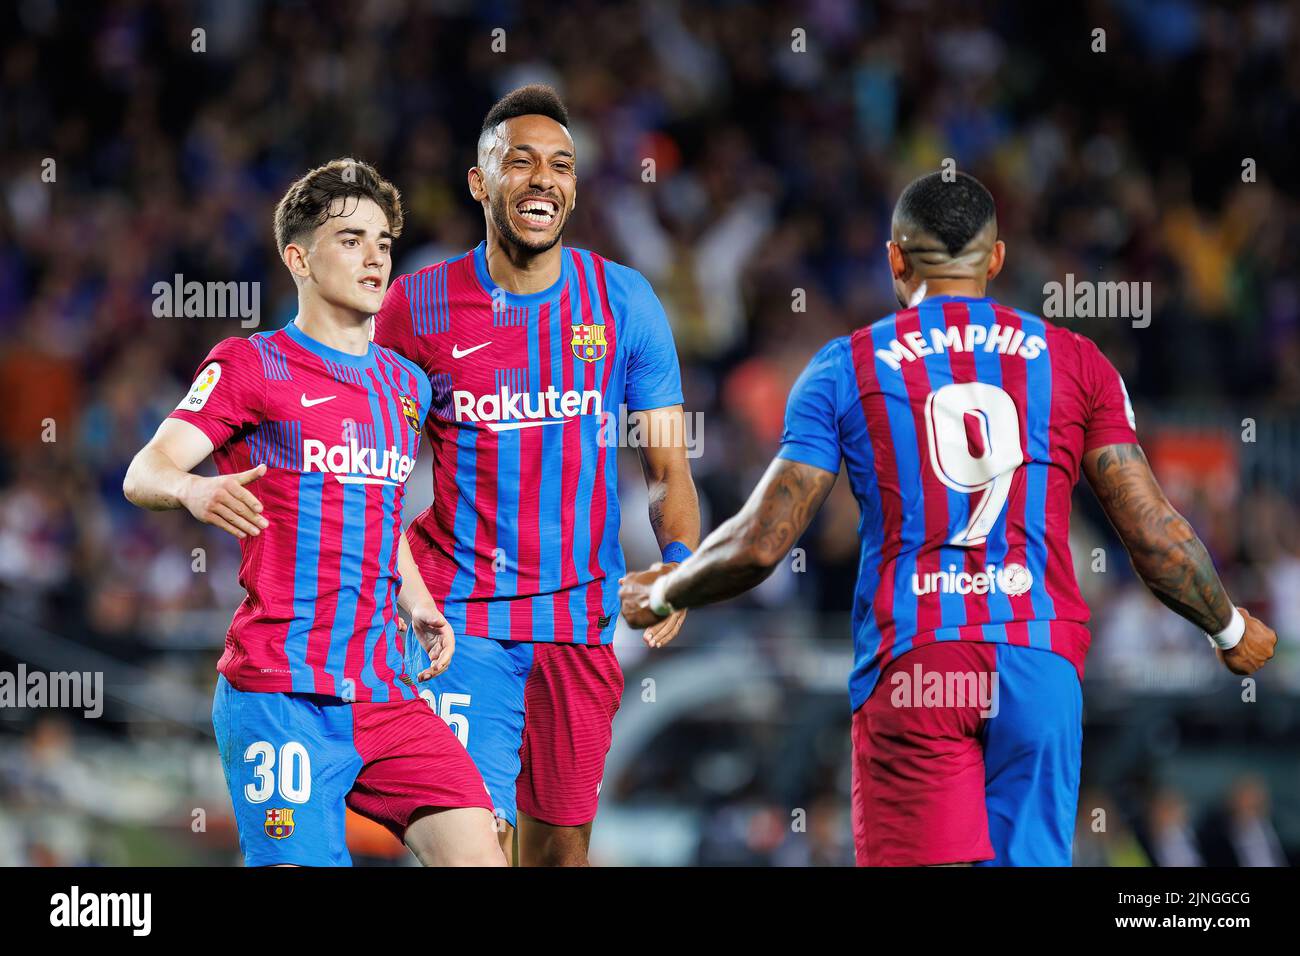 BARCELONA - MAYO 10: Aubameyang celebra tras marcar un gol durante el partido de Liga entre el FC Barcelona y el Real Club Celta de Vigo en el Camp N. Foto de stock